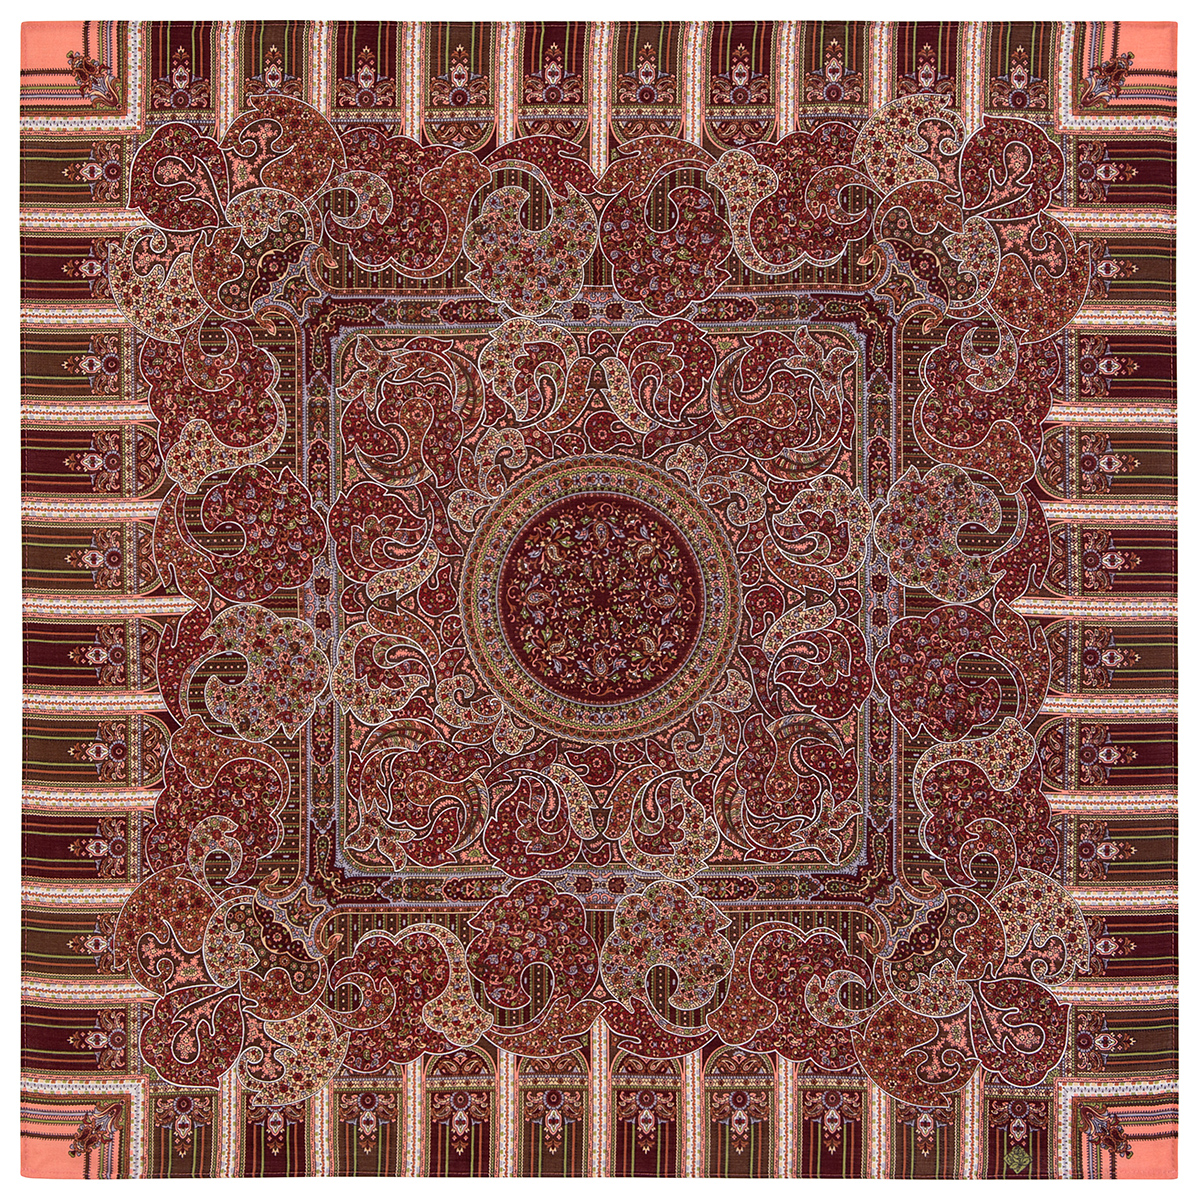 Платок женский Павловопосадский платок 789 красный/бордовый, 89x89 см